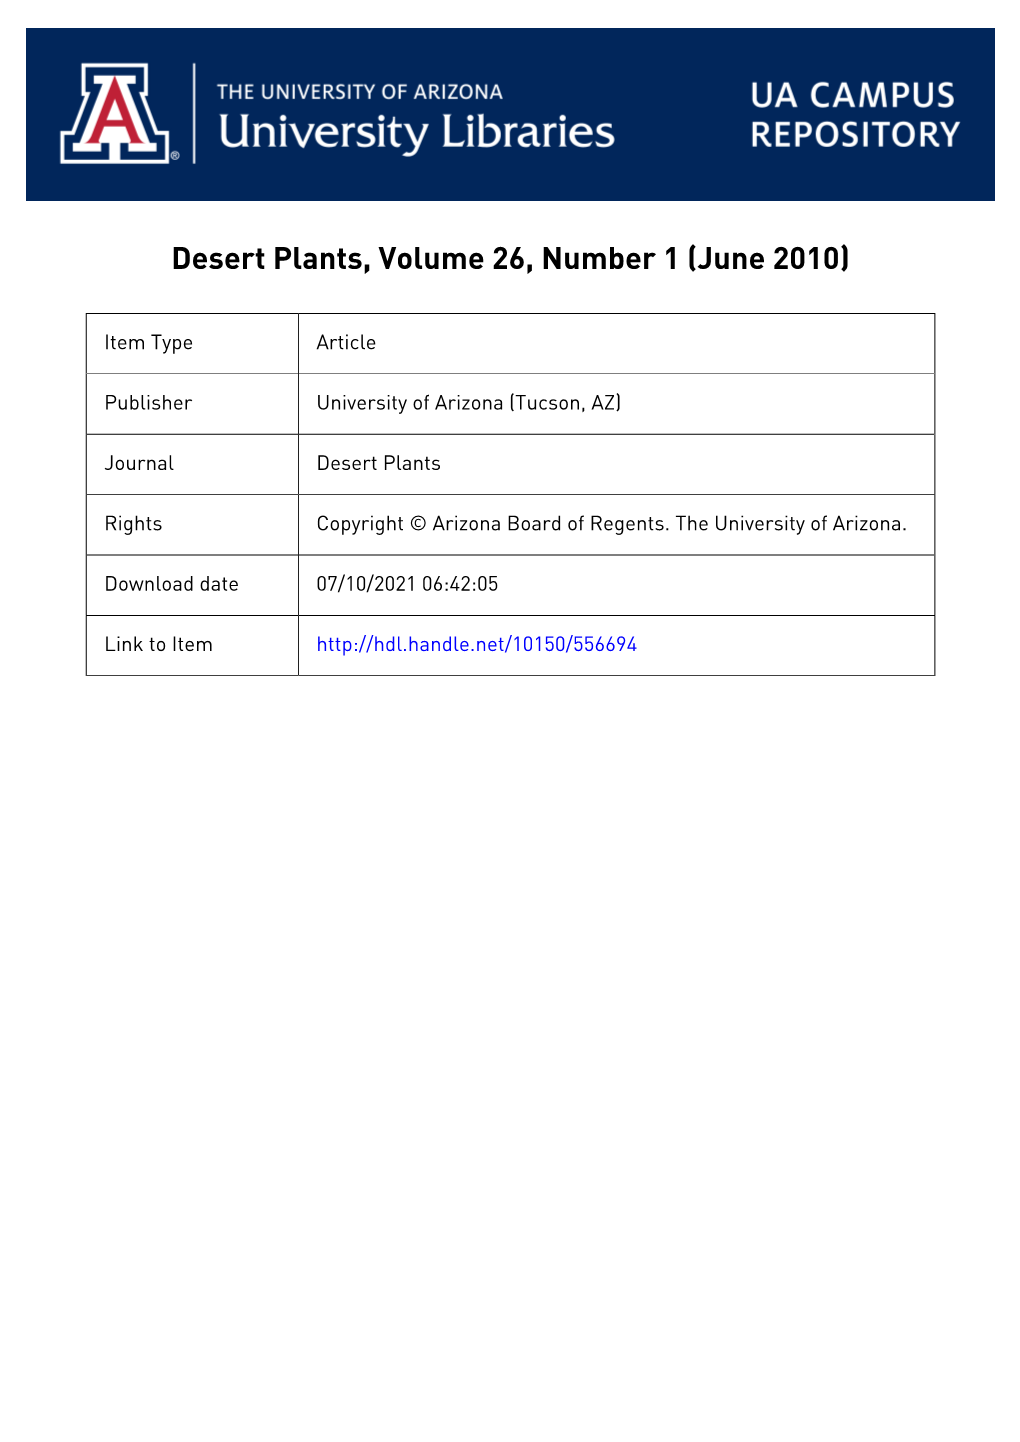 Desert Plants, Volume 26, Number 1 (June 2010)